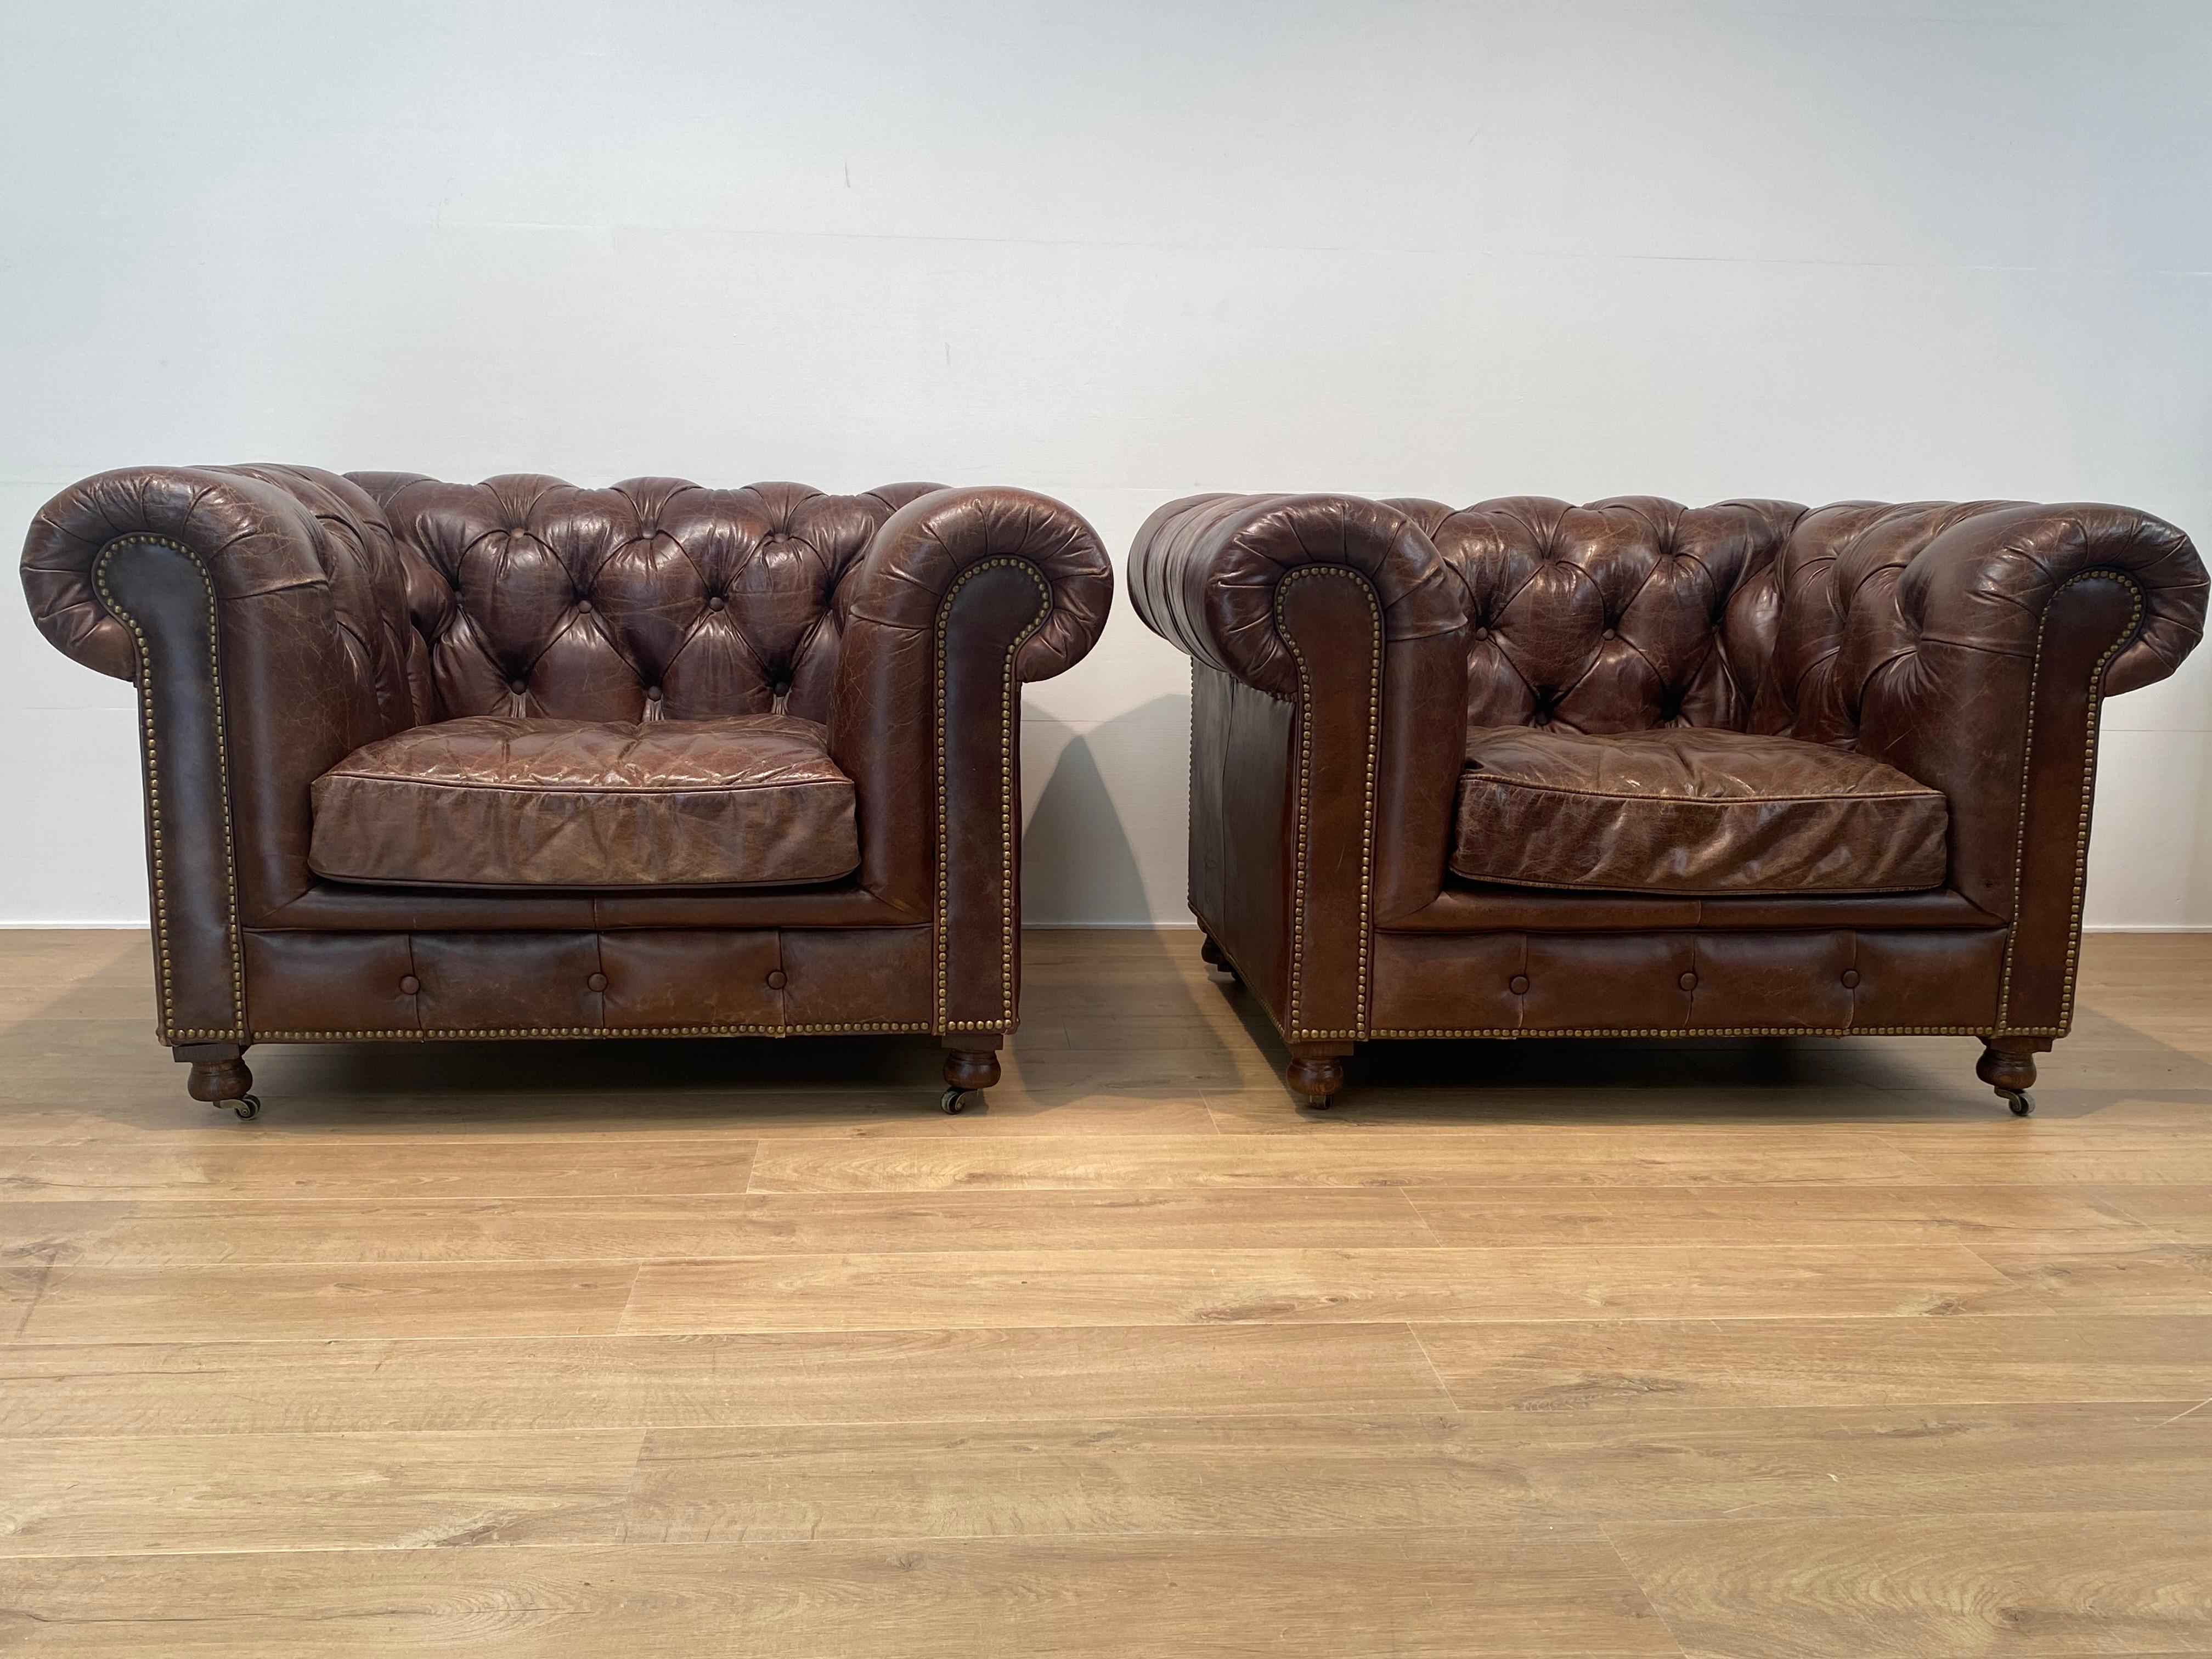 Schönes Paar englischer Chesterfield Club Chairs aus Leder,
ein klassischer Chesterfield-Sessel von John Lewis mit sanft geschwungenen Armlehnen und Knöpfen, in der Farbe Antique Whiskey,
sehr bequemes Sitzen, die Stühle sind in einem perfekten